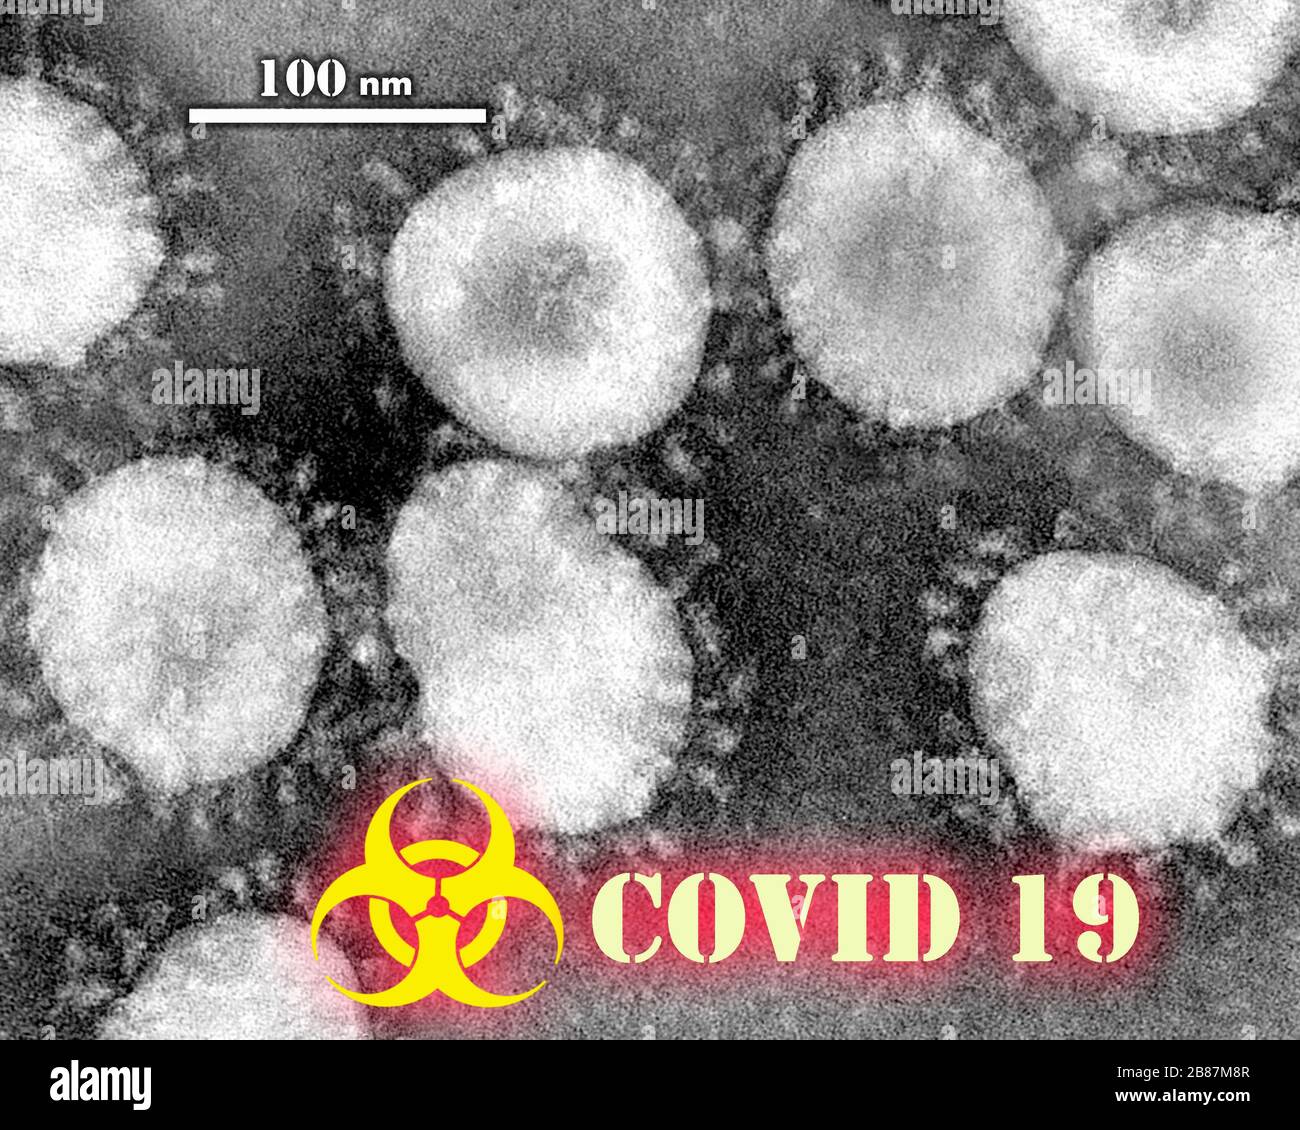 Coronavirus - COVID-19. Syndrome respiratoire aigu sévère coronavirus 2 (SRAS-CoV-2), précédemment connu sous le nom provisoire 2019 nouveau coronavirus Banque D'Images